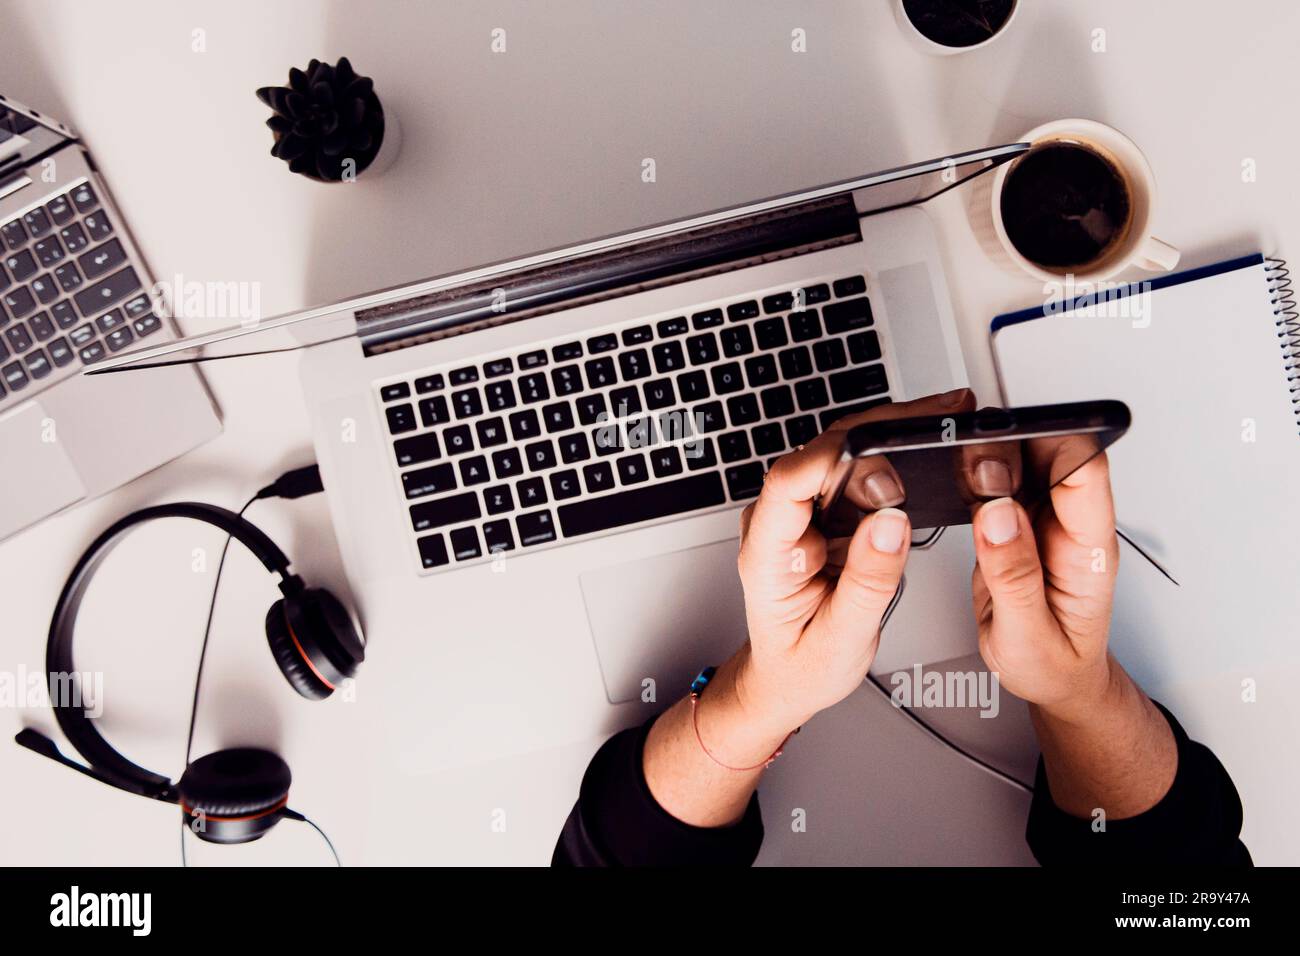 Un homme qui utilise un smartphone sur une table à côté d'un ordinateur portable ouvert avec un casque Banque D'Images